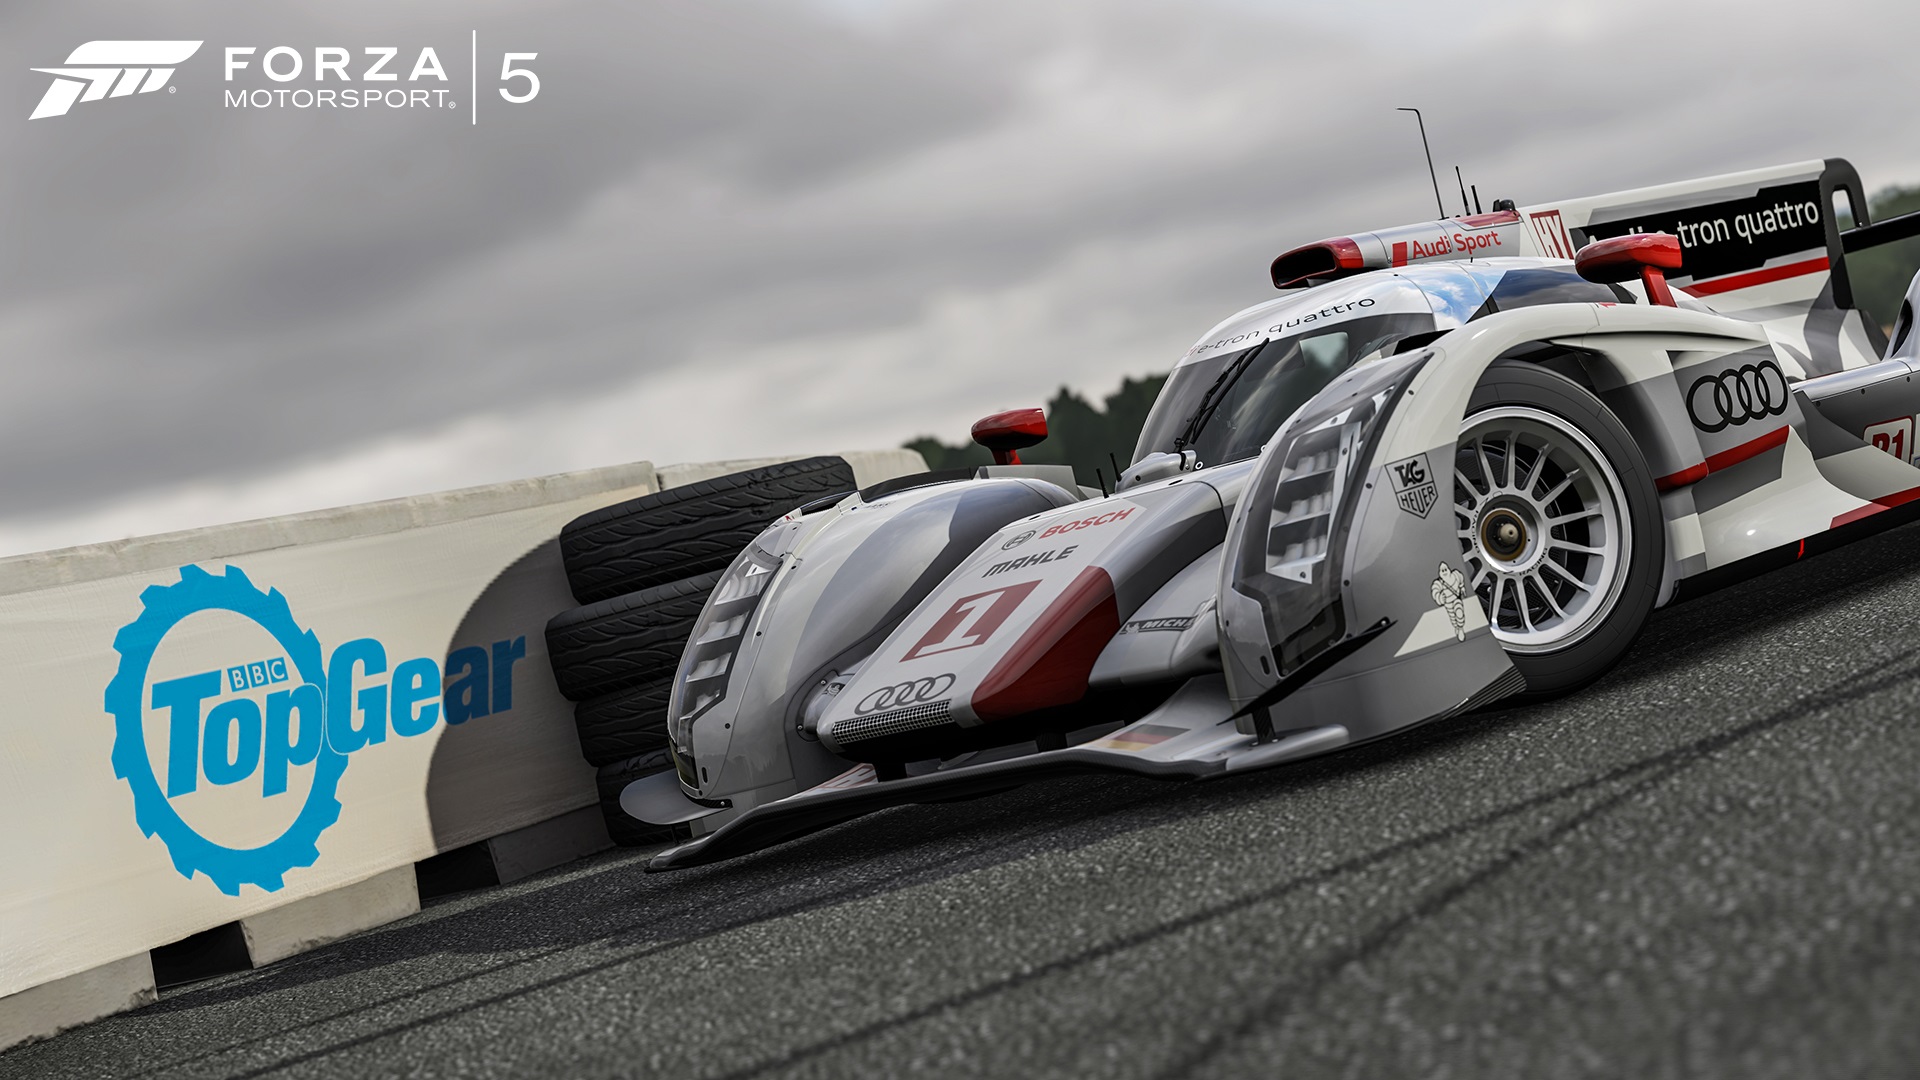 Forza Motorsport 5 Integrcia Top Gear sa obmedzuje iba na vodn komentre k jednotlivm ligm. V Autovista mde predstavuje aut po novom ensk hlas.